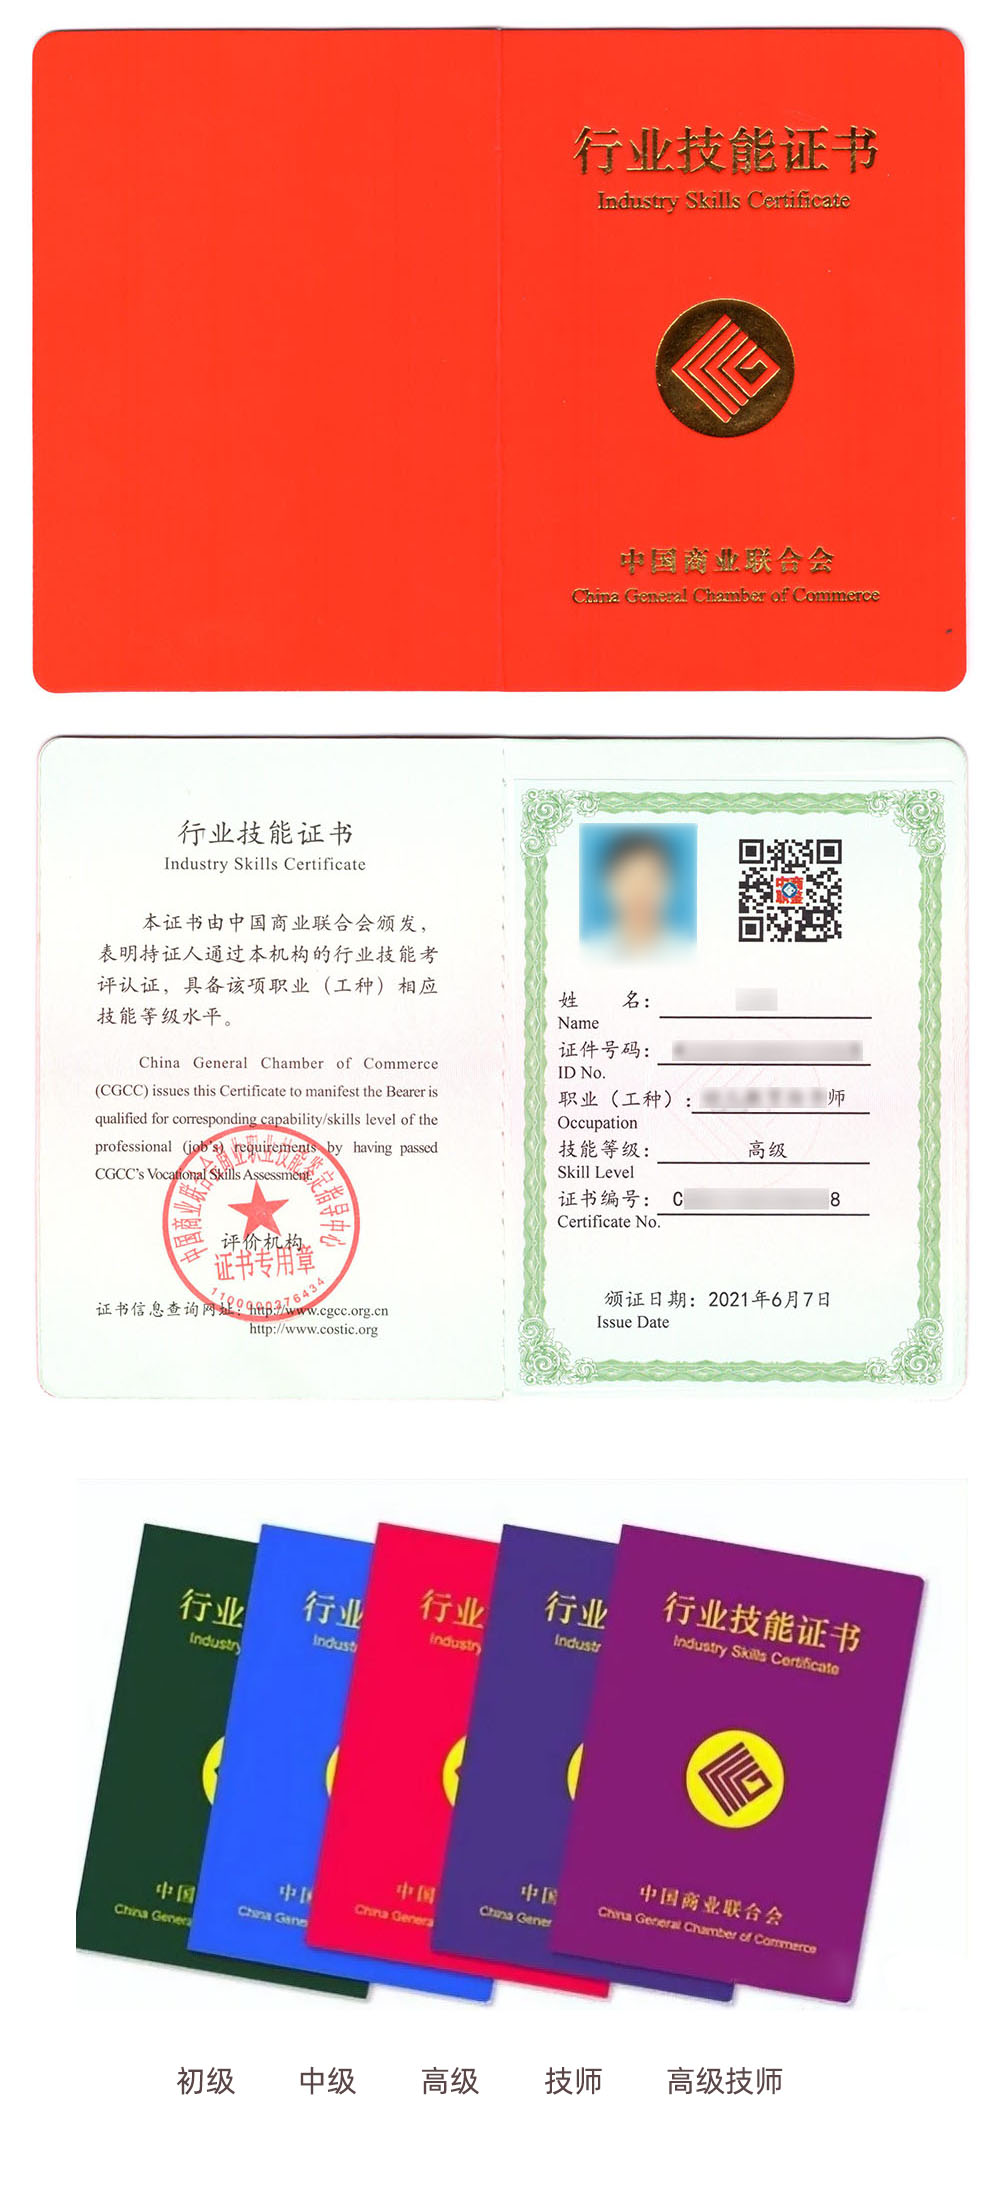 中国商业联合会商业职业技能鉴定中心 行业技能证书 活动策划师证证书样本